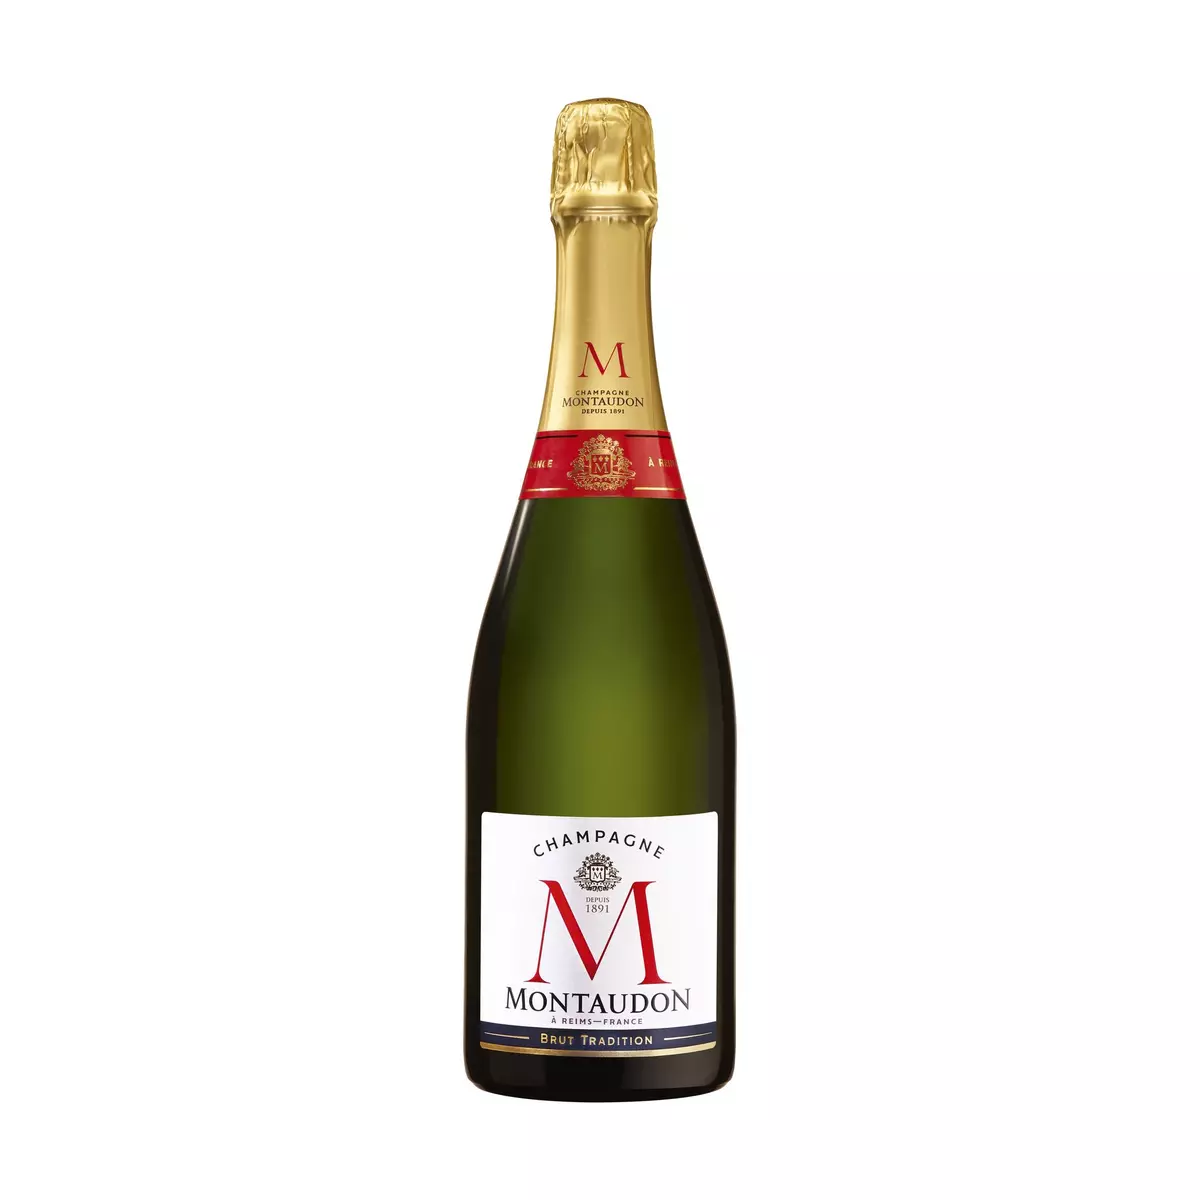 MONTAUDON AOP Champagne brut 75cl